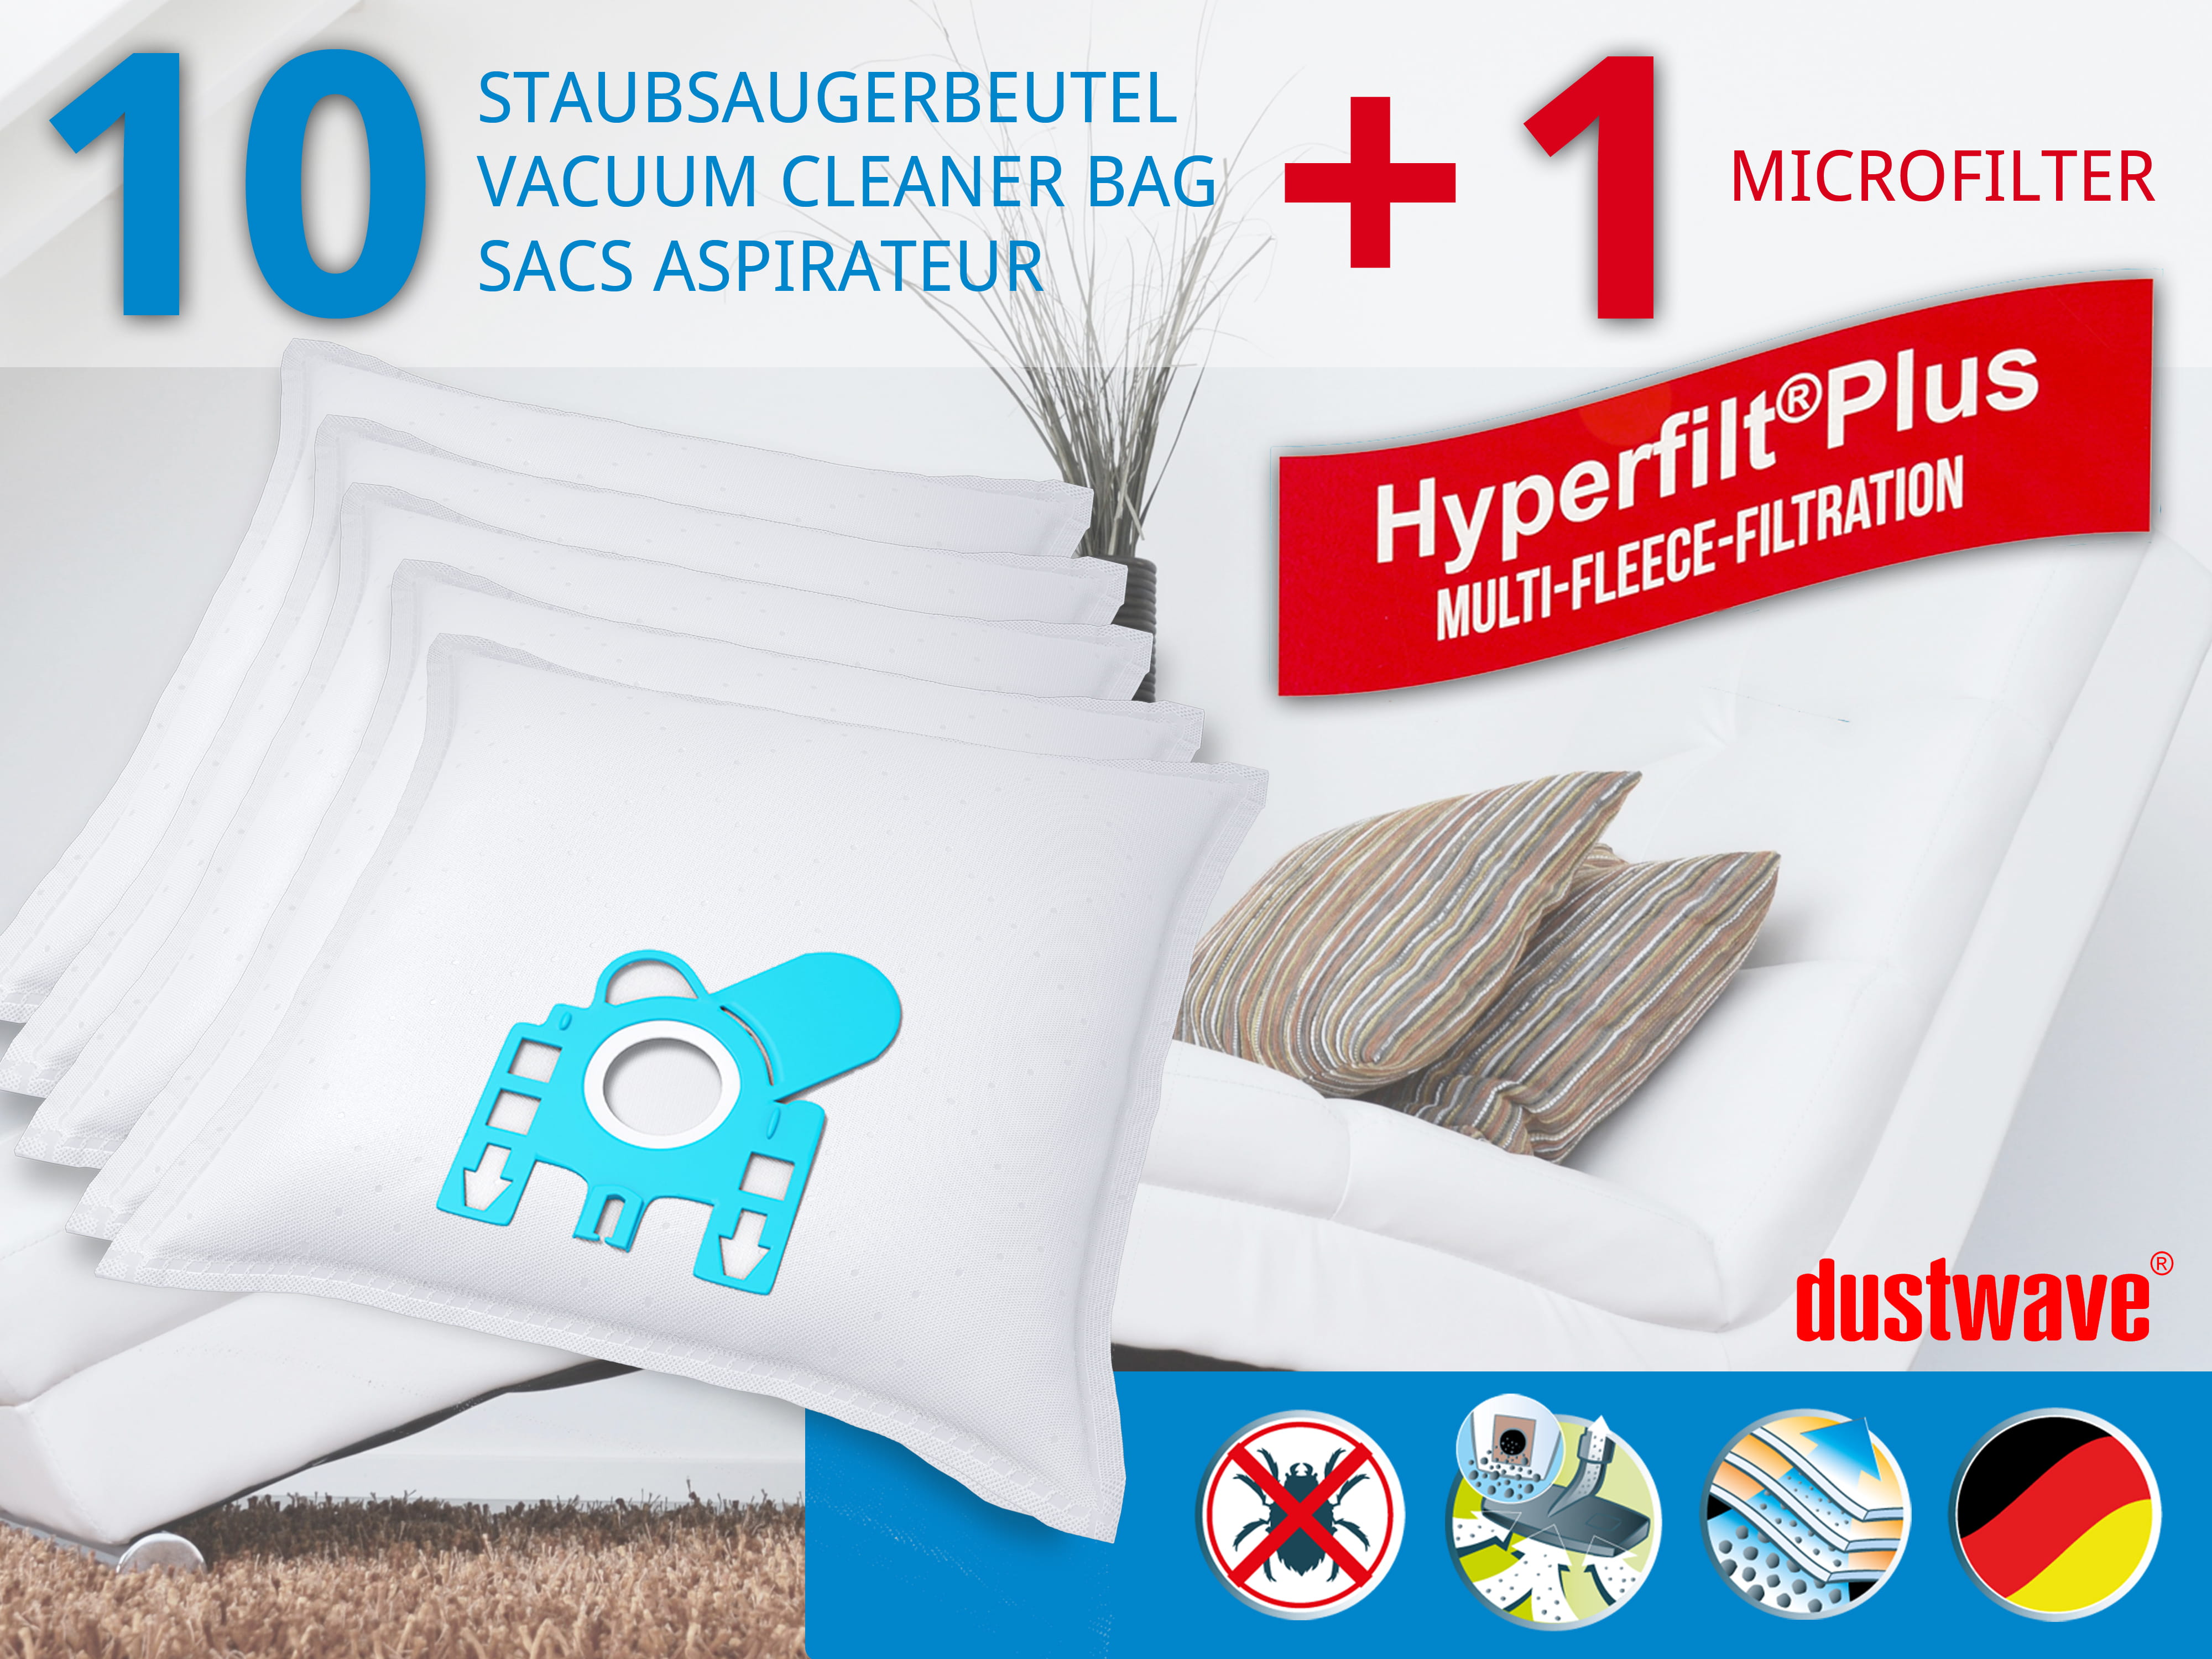 Dustwave® 10 Staubsaugerbeutel für Hoover Micropower SC 125 - hocheffizient, mehrlagiges Mikrovlies mit Hygieneverschluss - Made in Germany